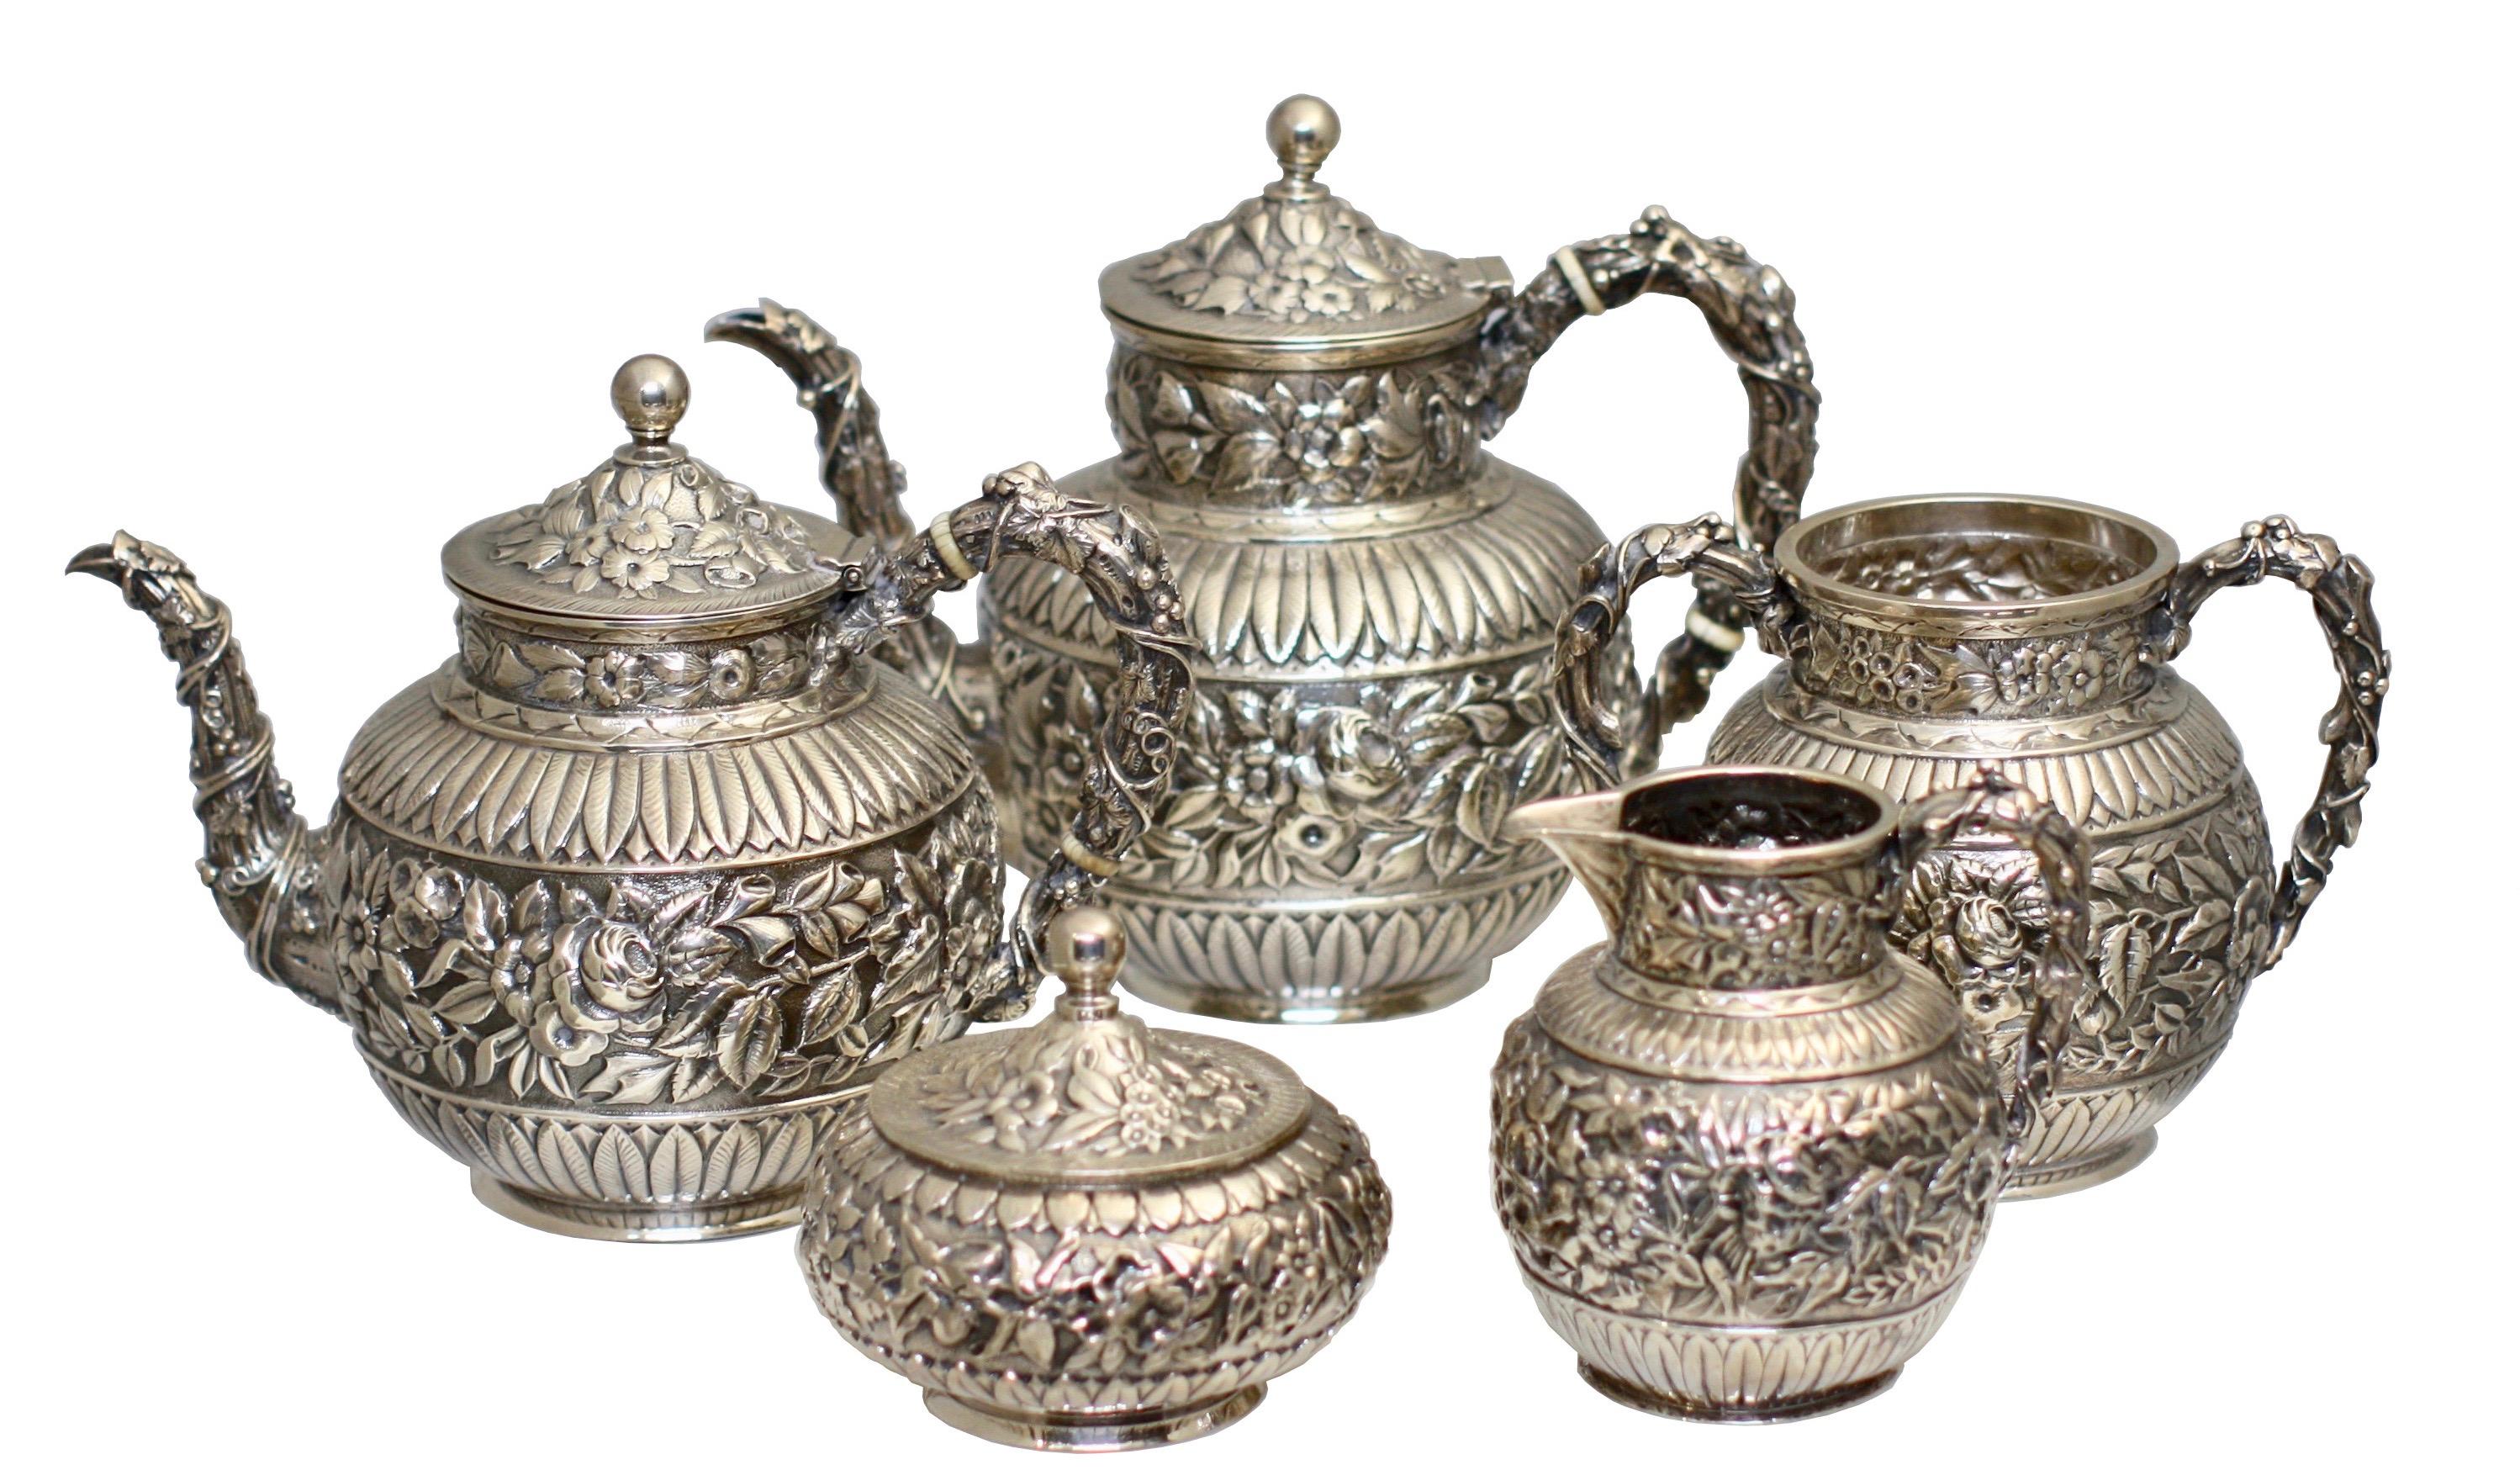 
J.E. Service à thé et à café Caldwell & Co. en argent, composé de cinq pièces, ainsi qu'un plateau Elkington en métal argenté
Philadelphie, vers 1880. 
Comprenant une cafetière (719 grammes), une théière (652 grammes), un pot à crème (244 grammes),